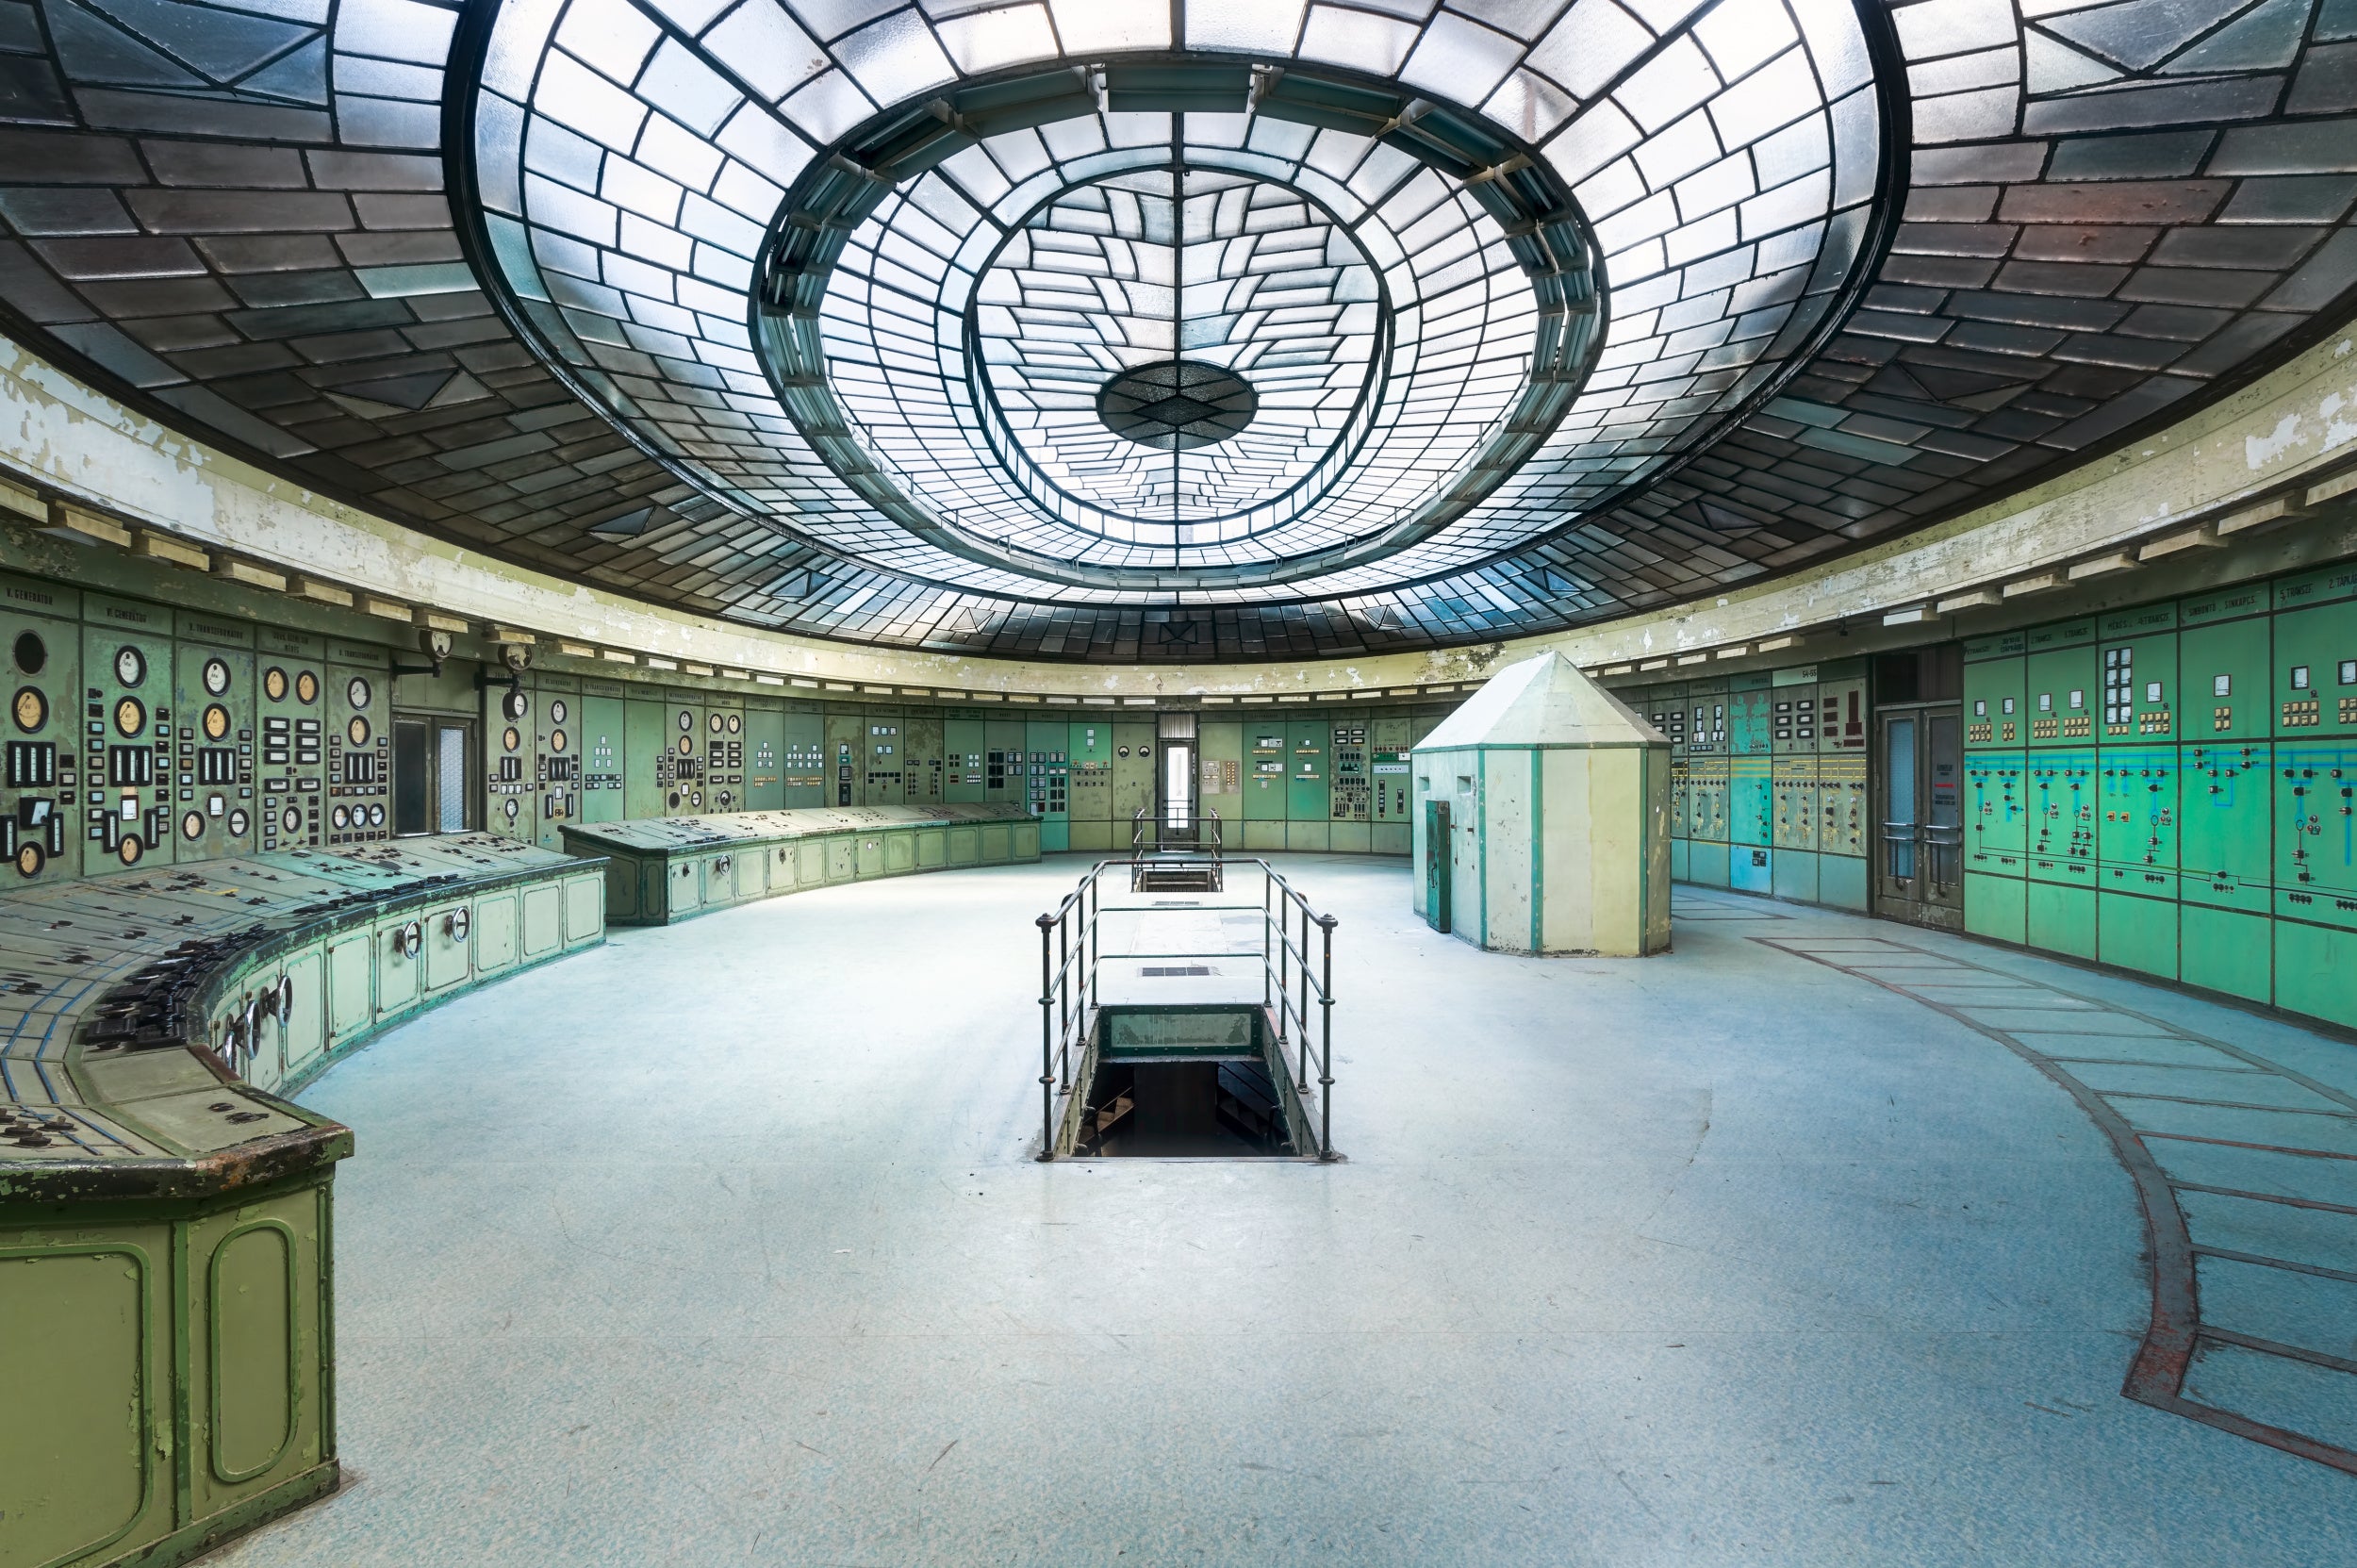 Abandoned Art Deco Control Room